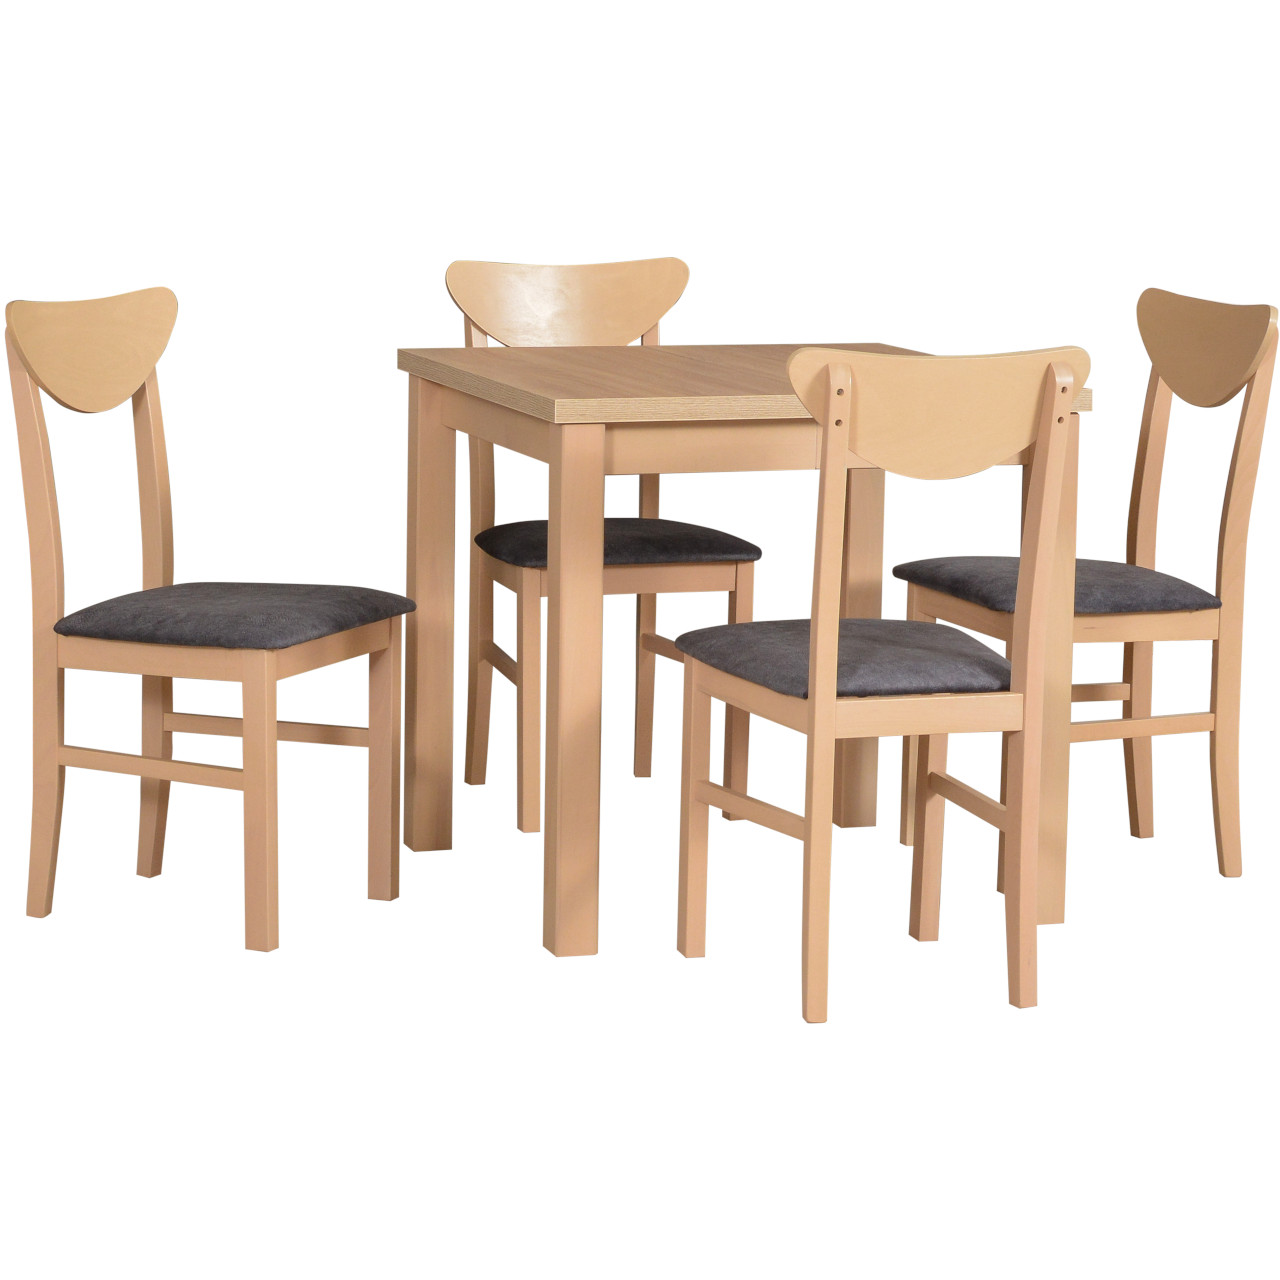 Asztal MAX 8 sonoma laminált + szék LEO 2 (4 db) sonoma tölgy / 16B